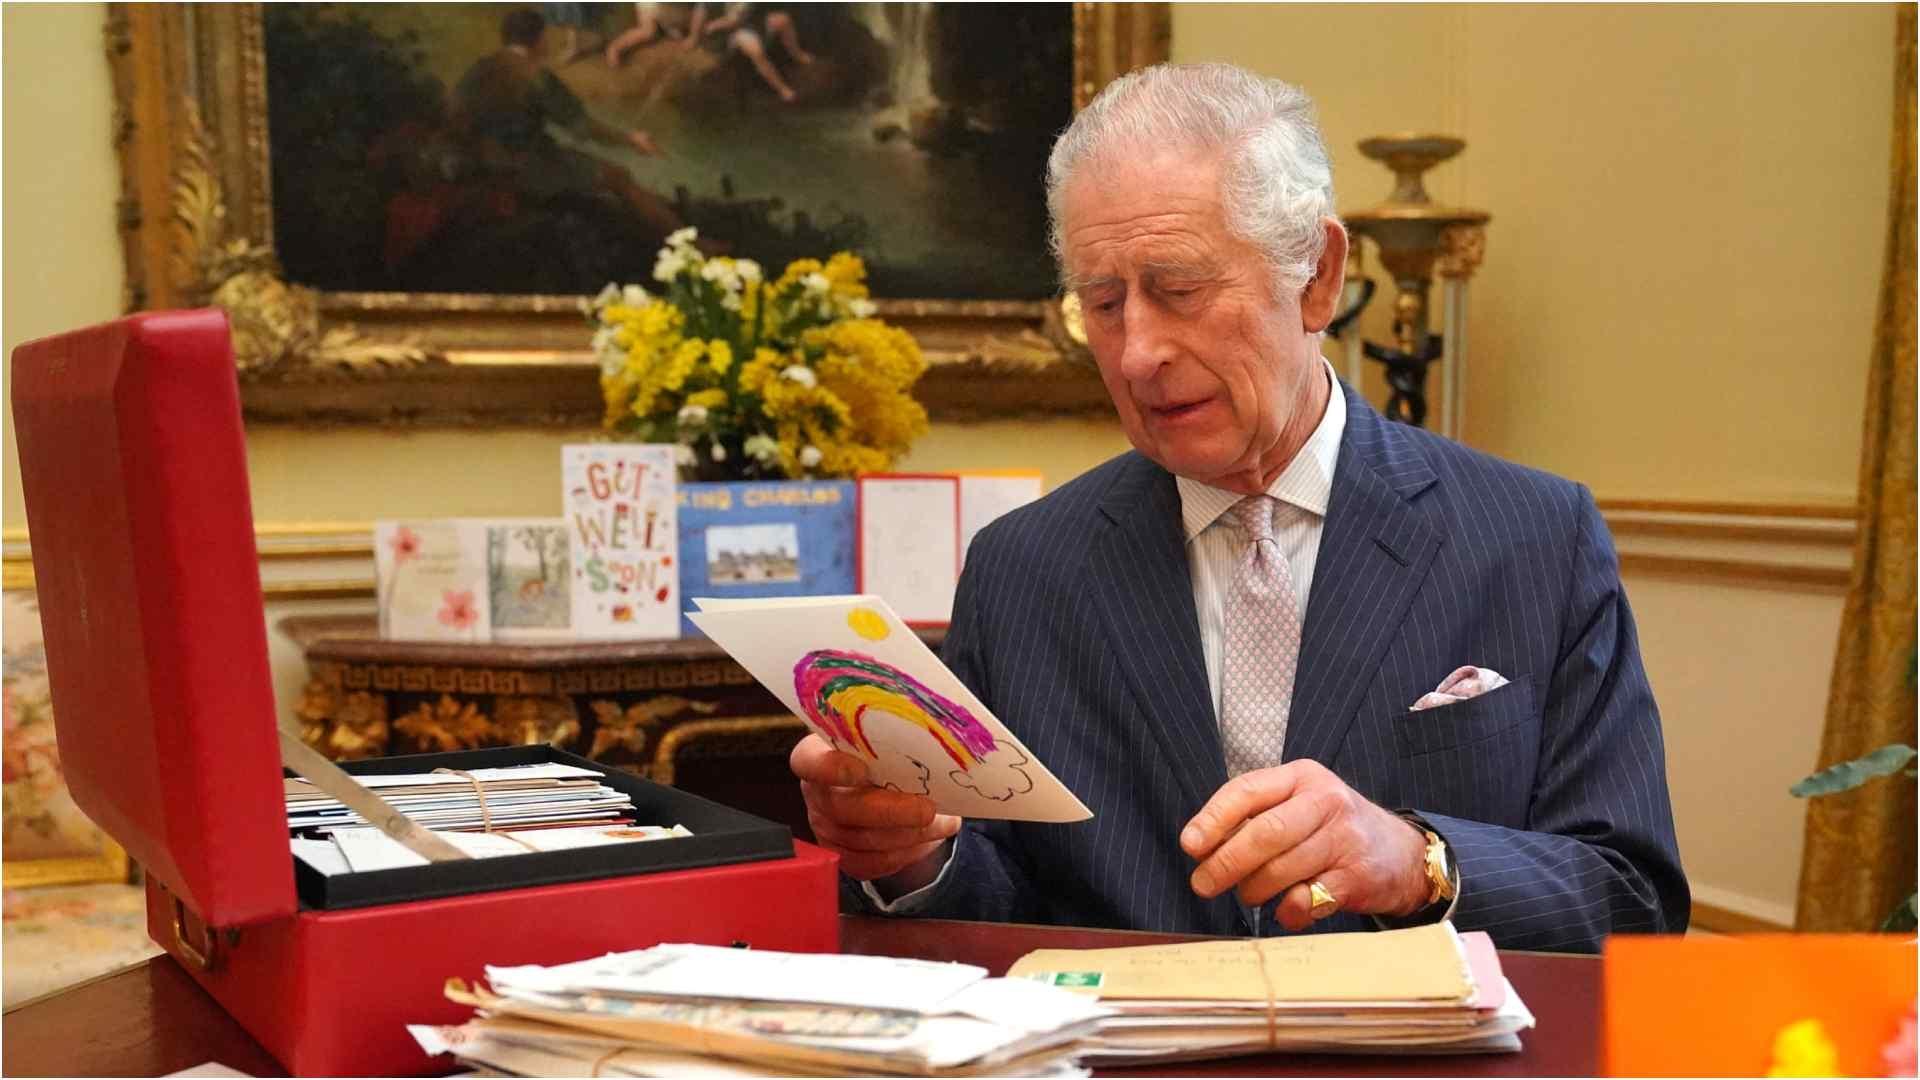 Rey Carlos III Agradece Miles de Cartas y Mensajes Recibidos Tras Diagnóstico de Cáncer 